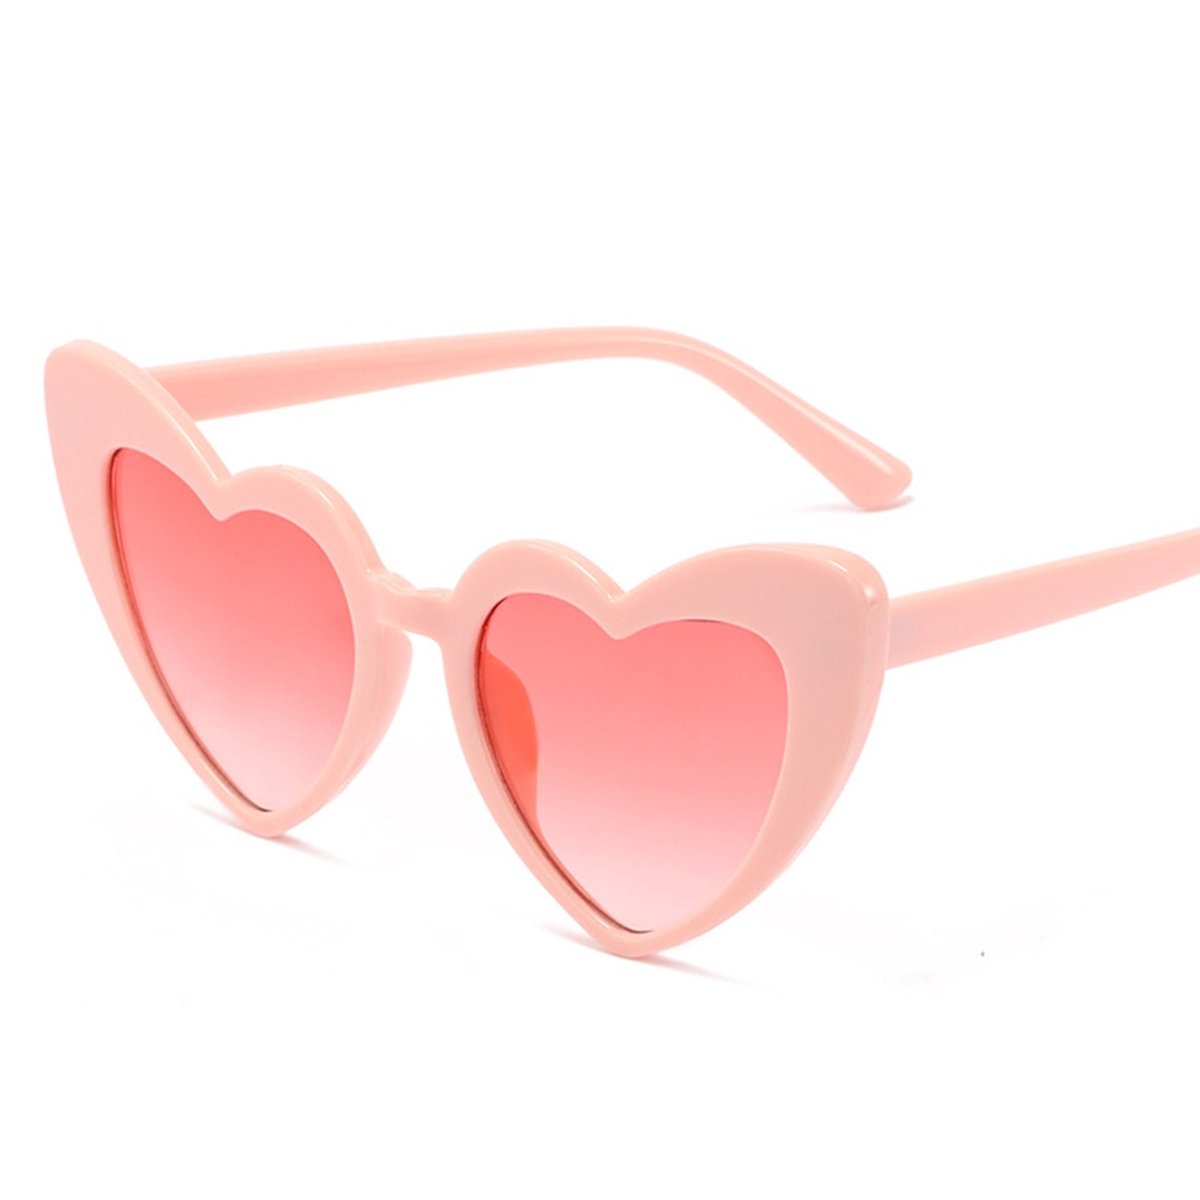 Zonnebril - Hartjes zonnebril - Hartshaped glasses - Festivalbril - Festival - Partybril - Roze - One size